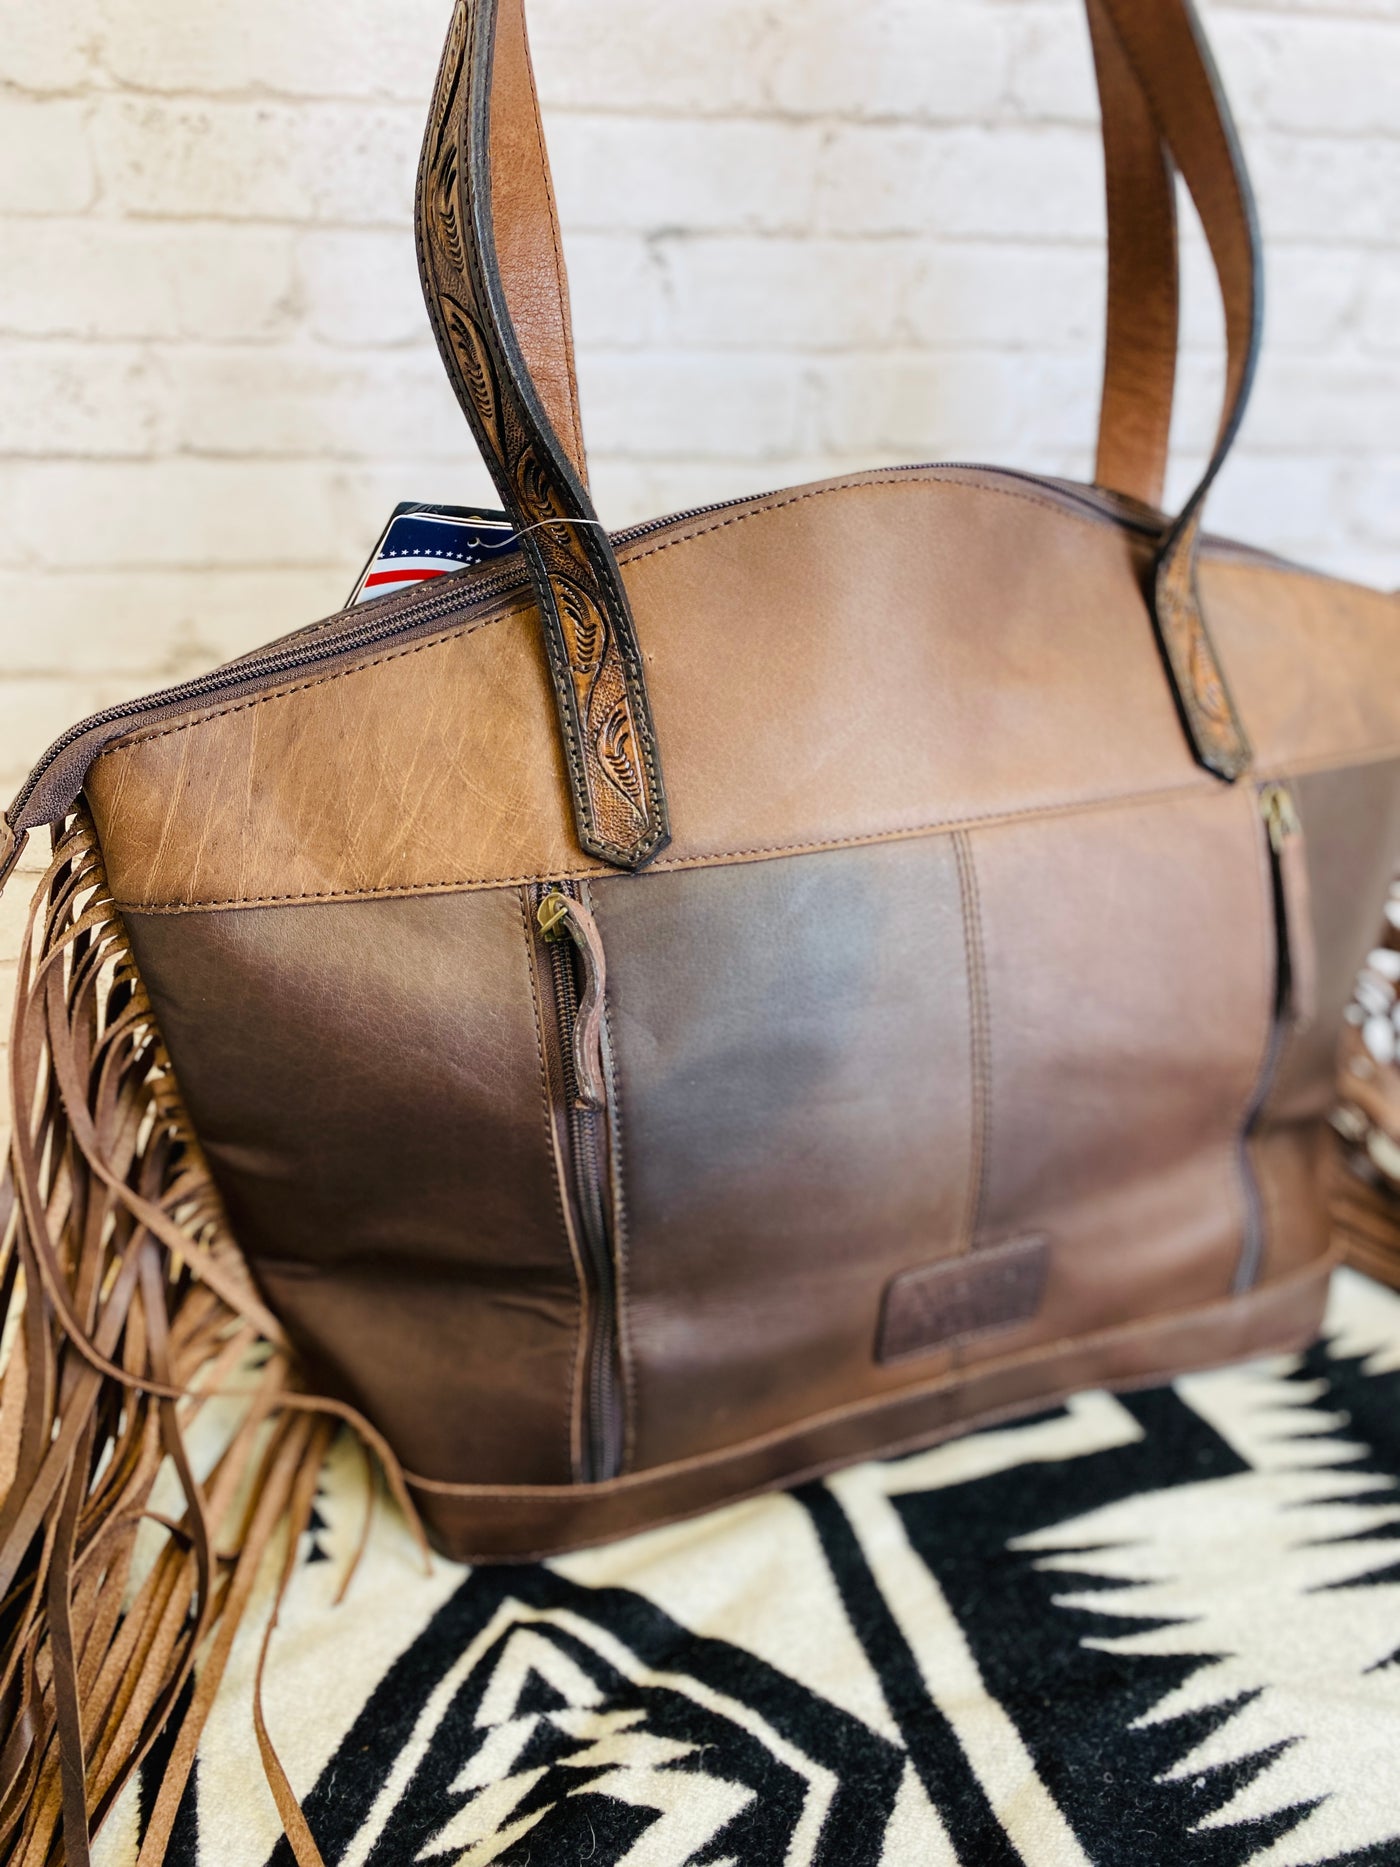 Eldorado Leather Conceal Carry Handbag